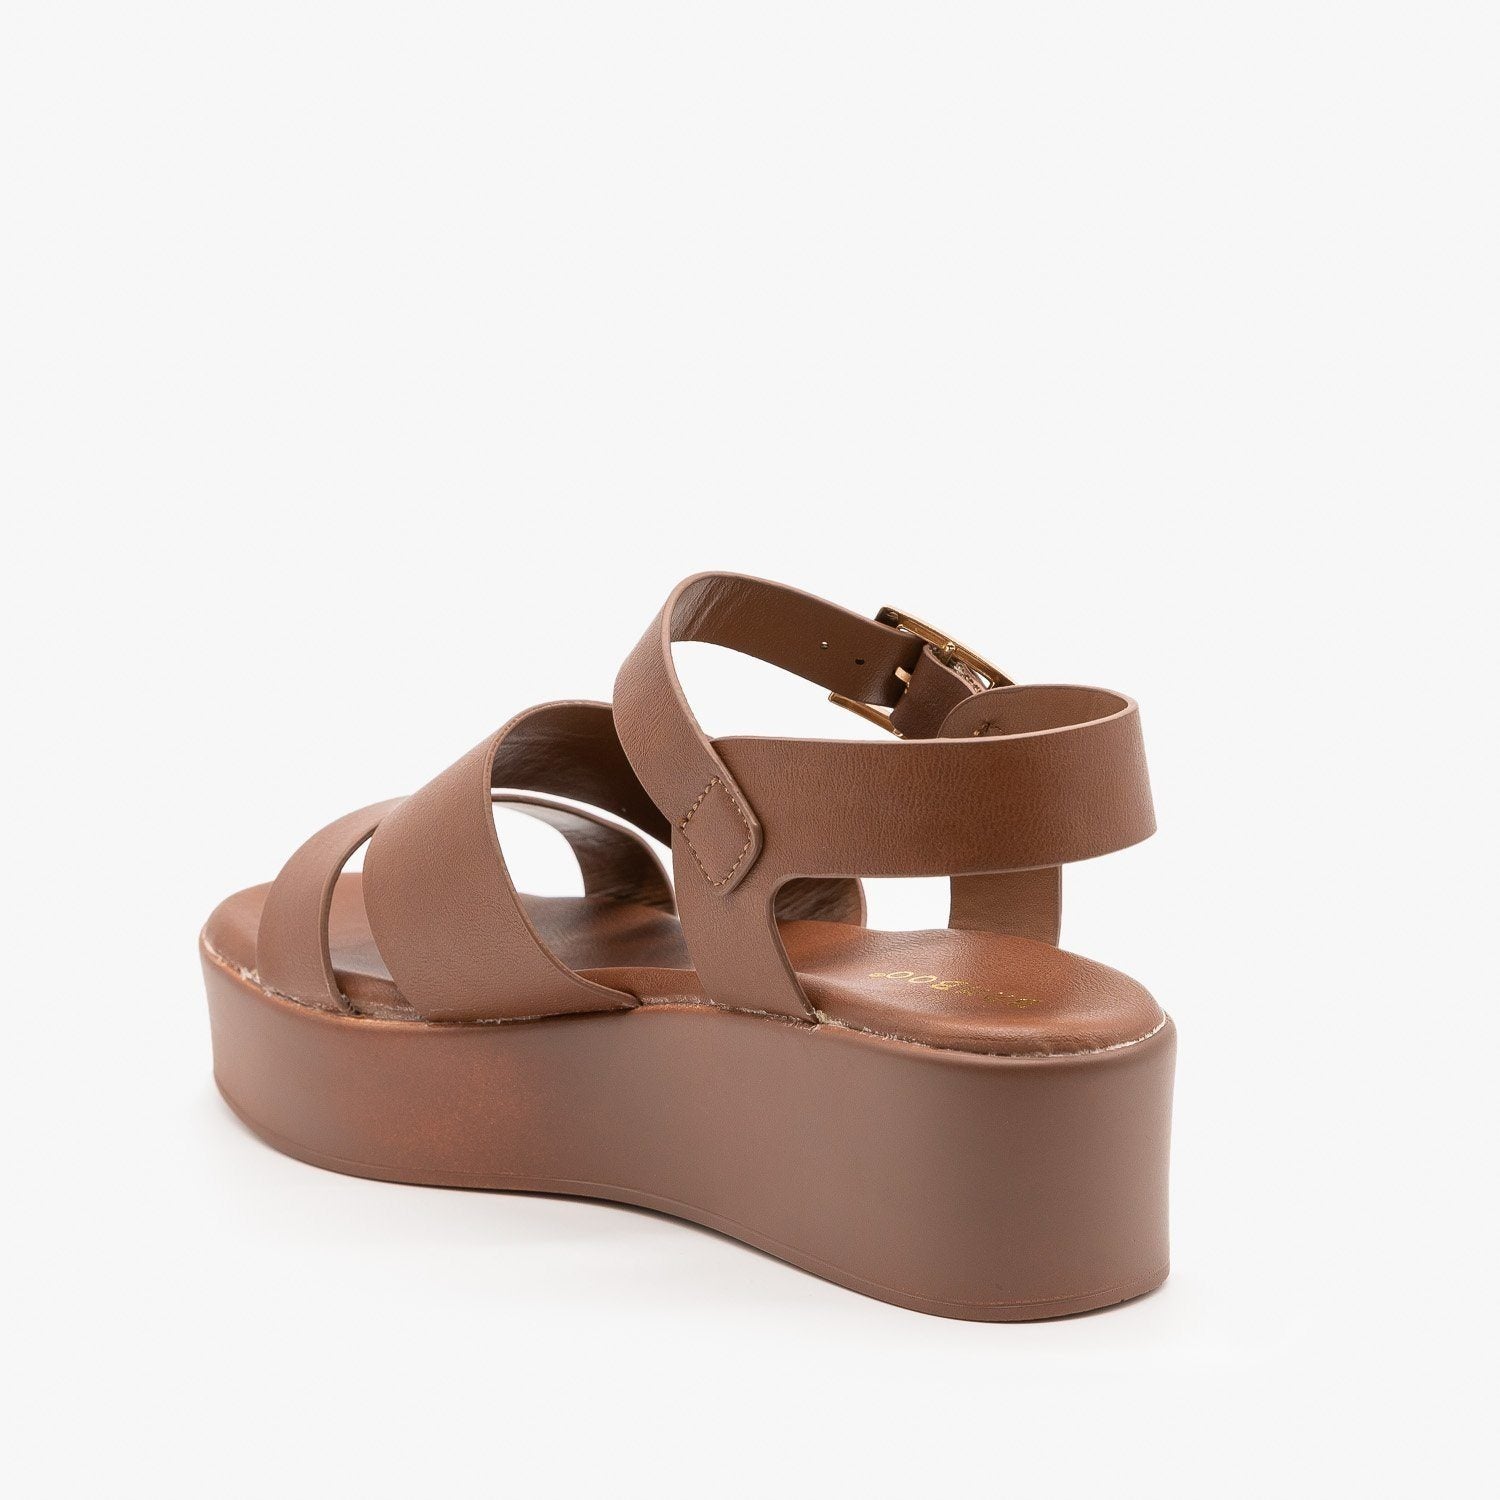 strappy wedge platform sandals